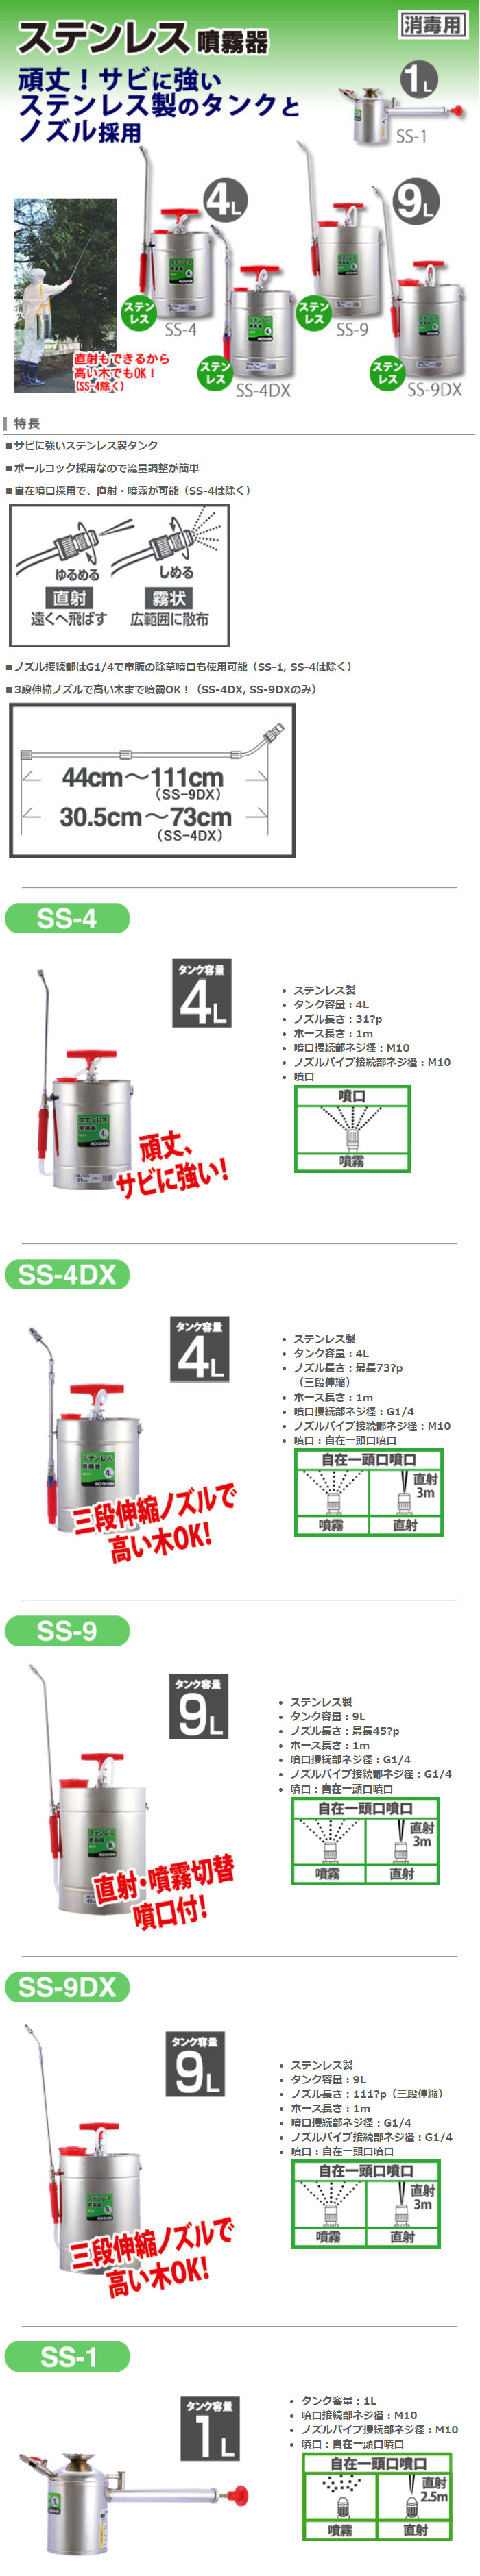 ステンレス噴霧器 SS-9DX(SS-9DX-AAA-0) | 株式会社工進【公式】